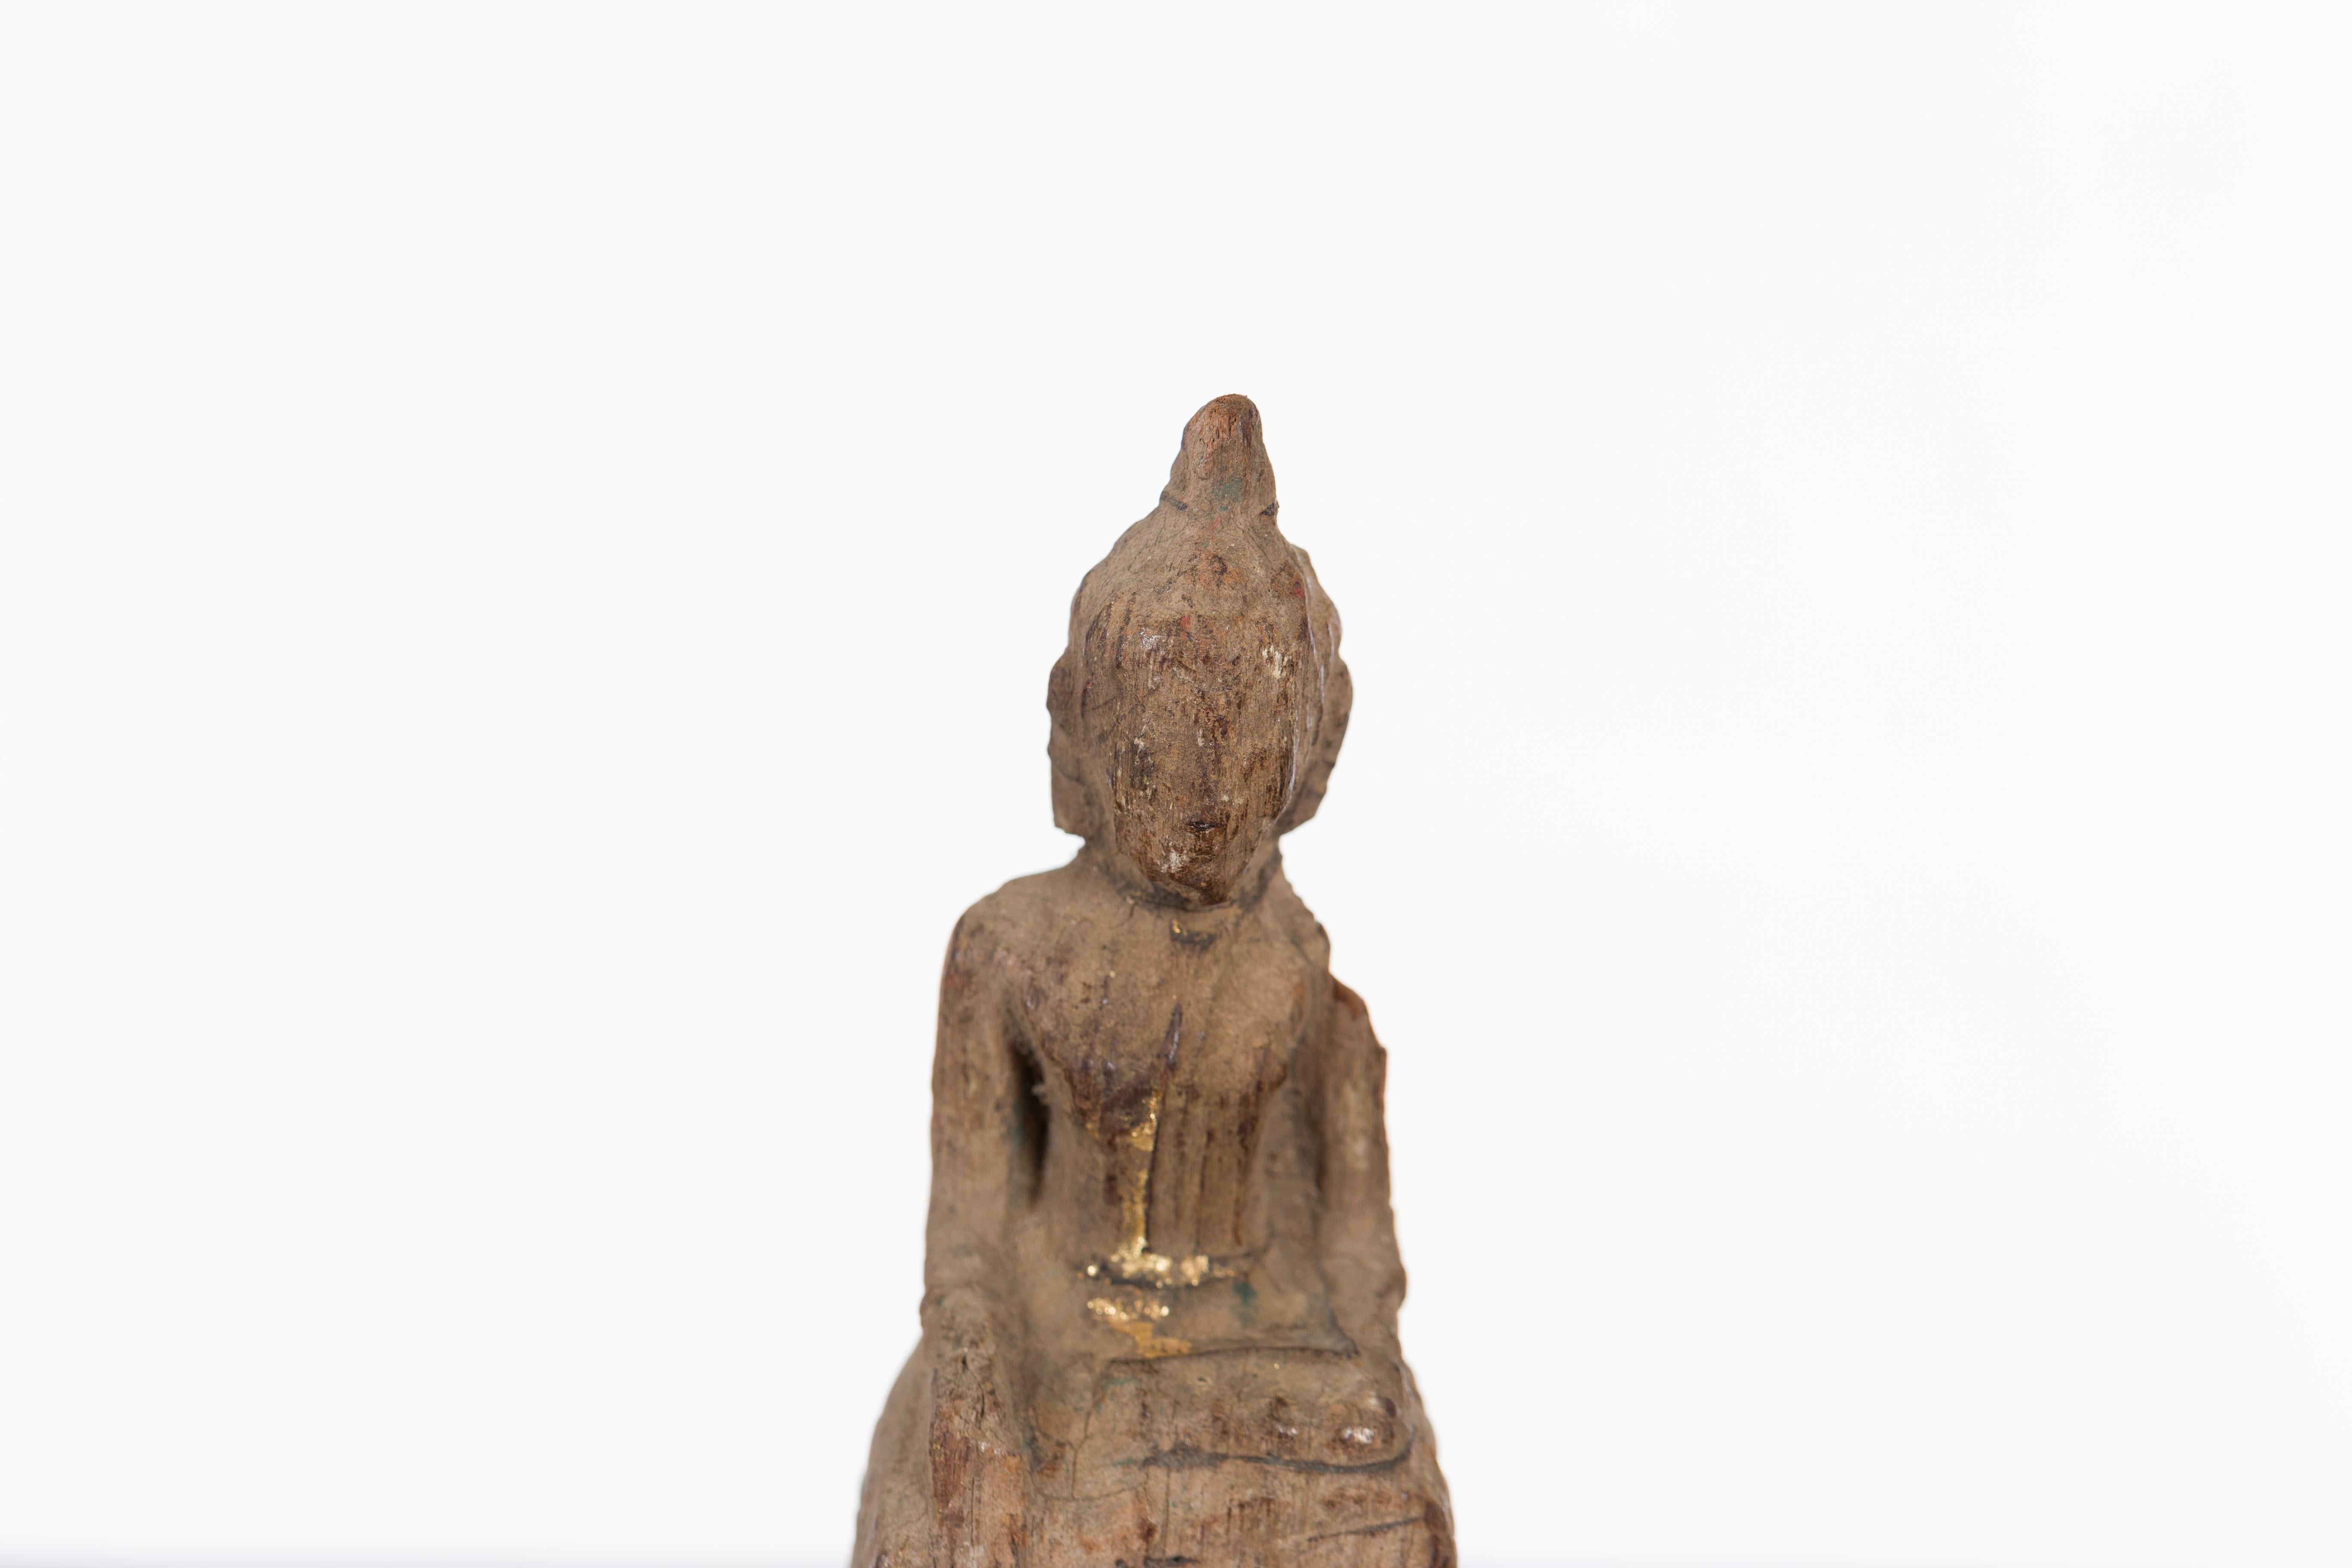 Petite Wooden Thai Ayutthaya Period Buddha Sculpture with Bhumisparsha Mudra 4